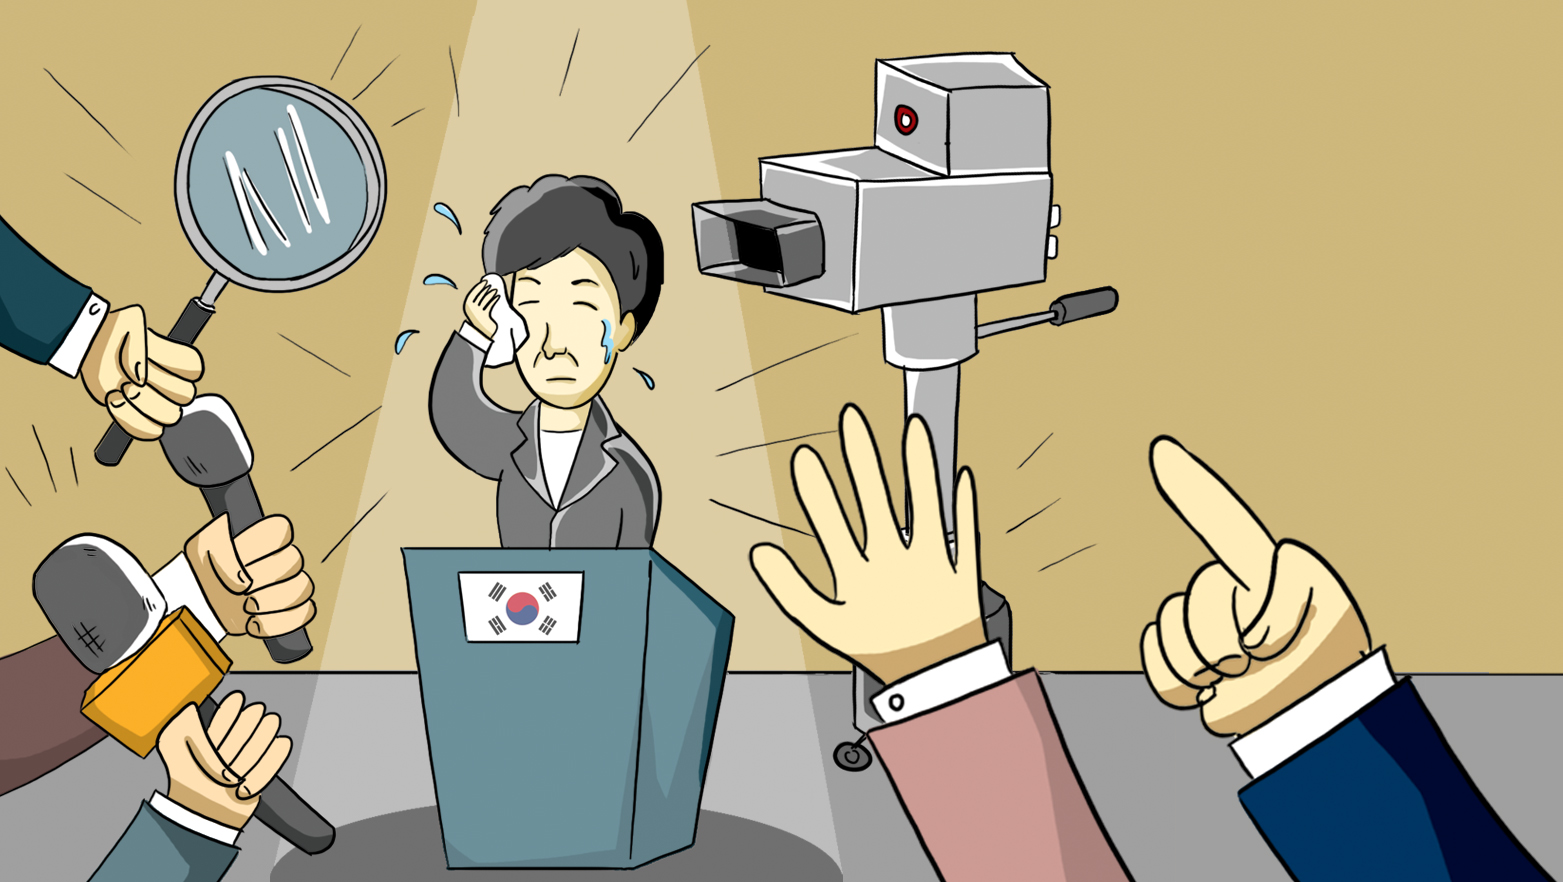 South Korea scandal